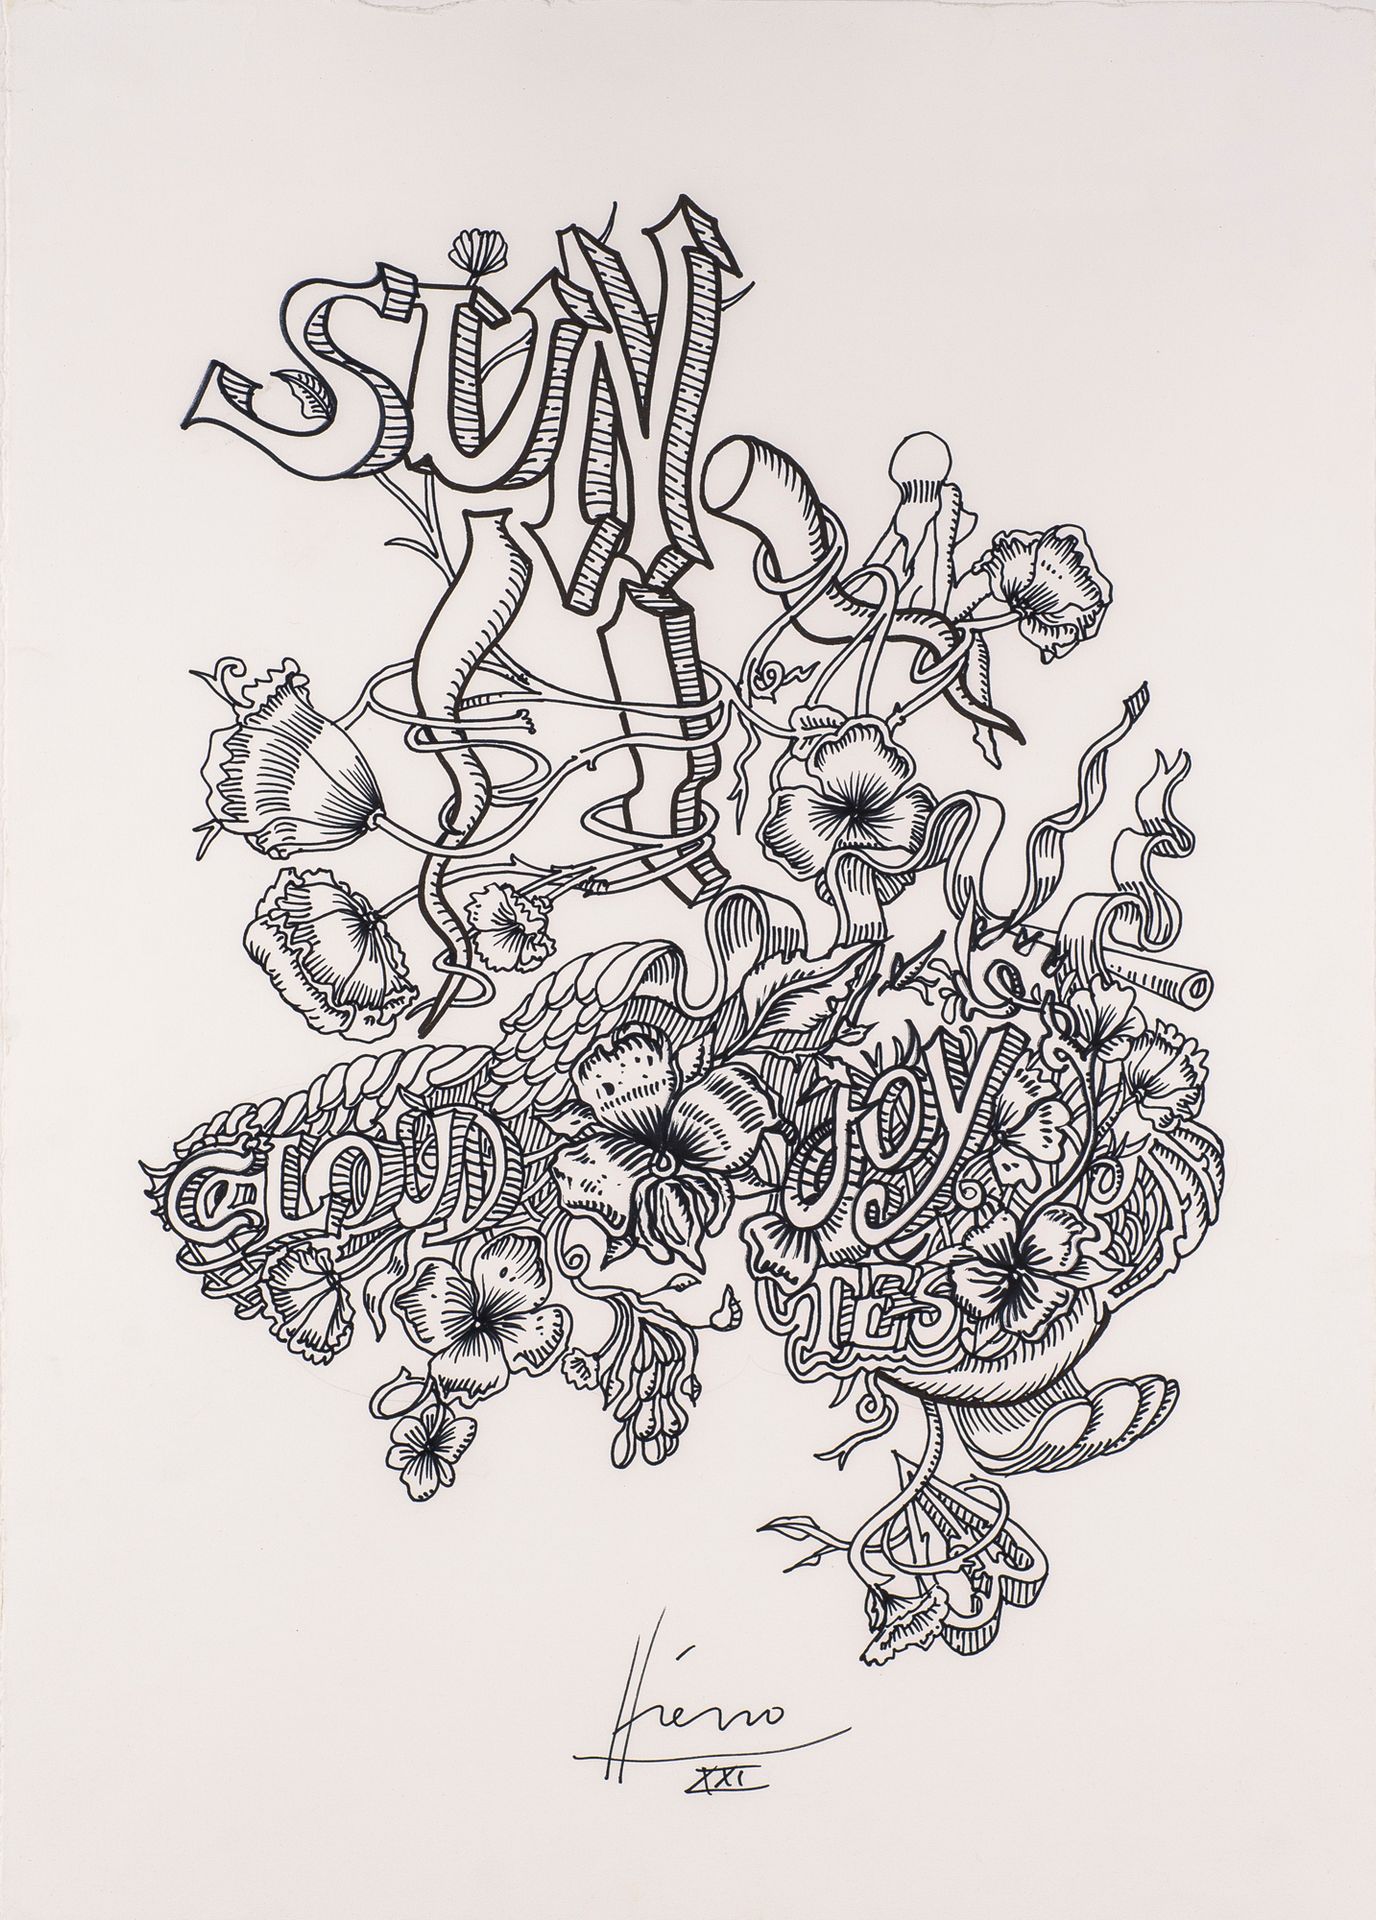 Jean-Antoine HIERRO (ne en 1960) Sun
Tinte auf Papier
Signiert
54 x 38 cm
Unter &hellip;